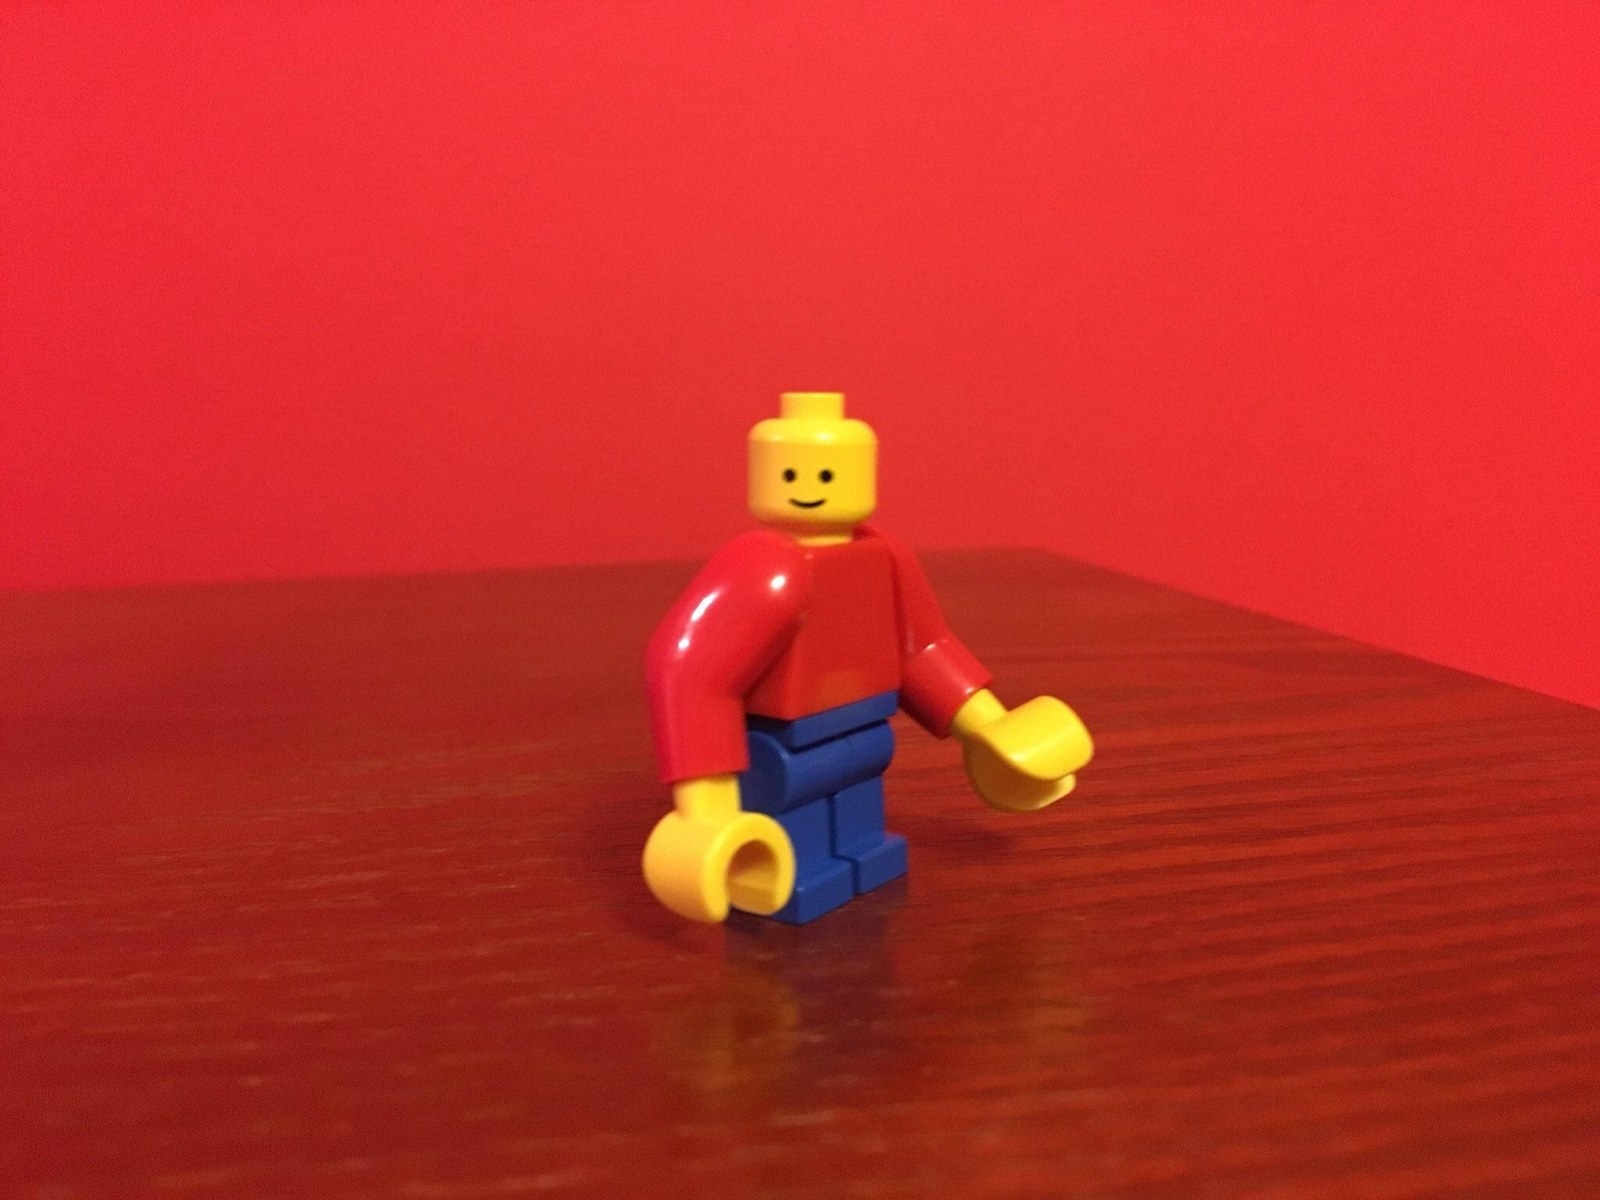 Lego cursed images